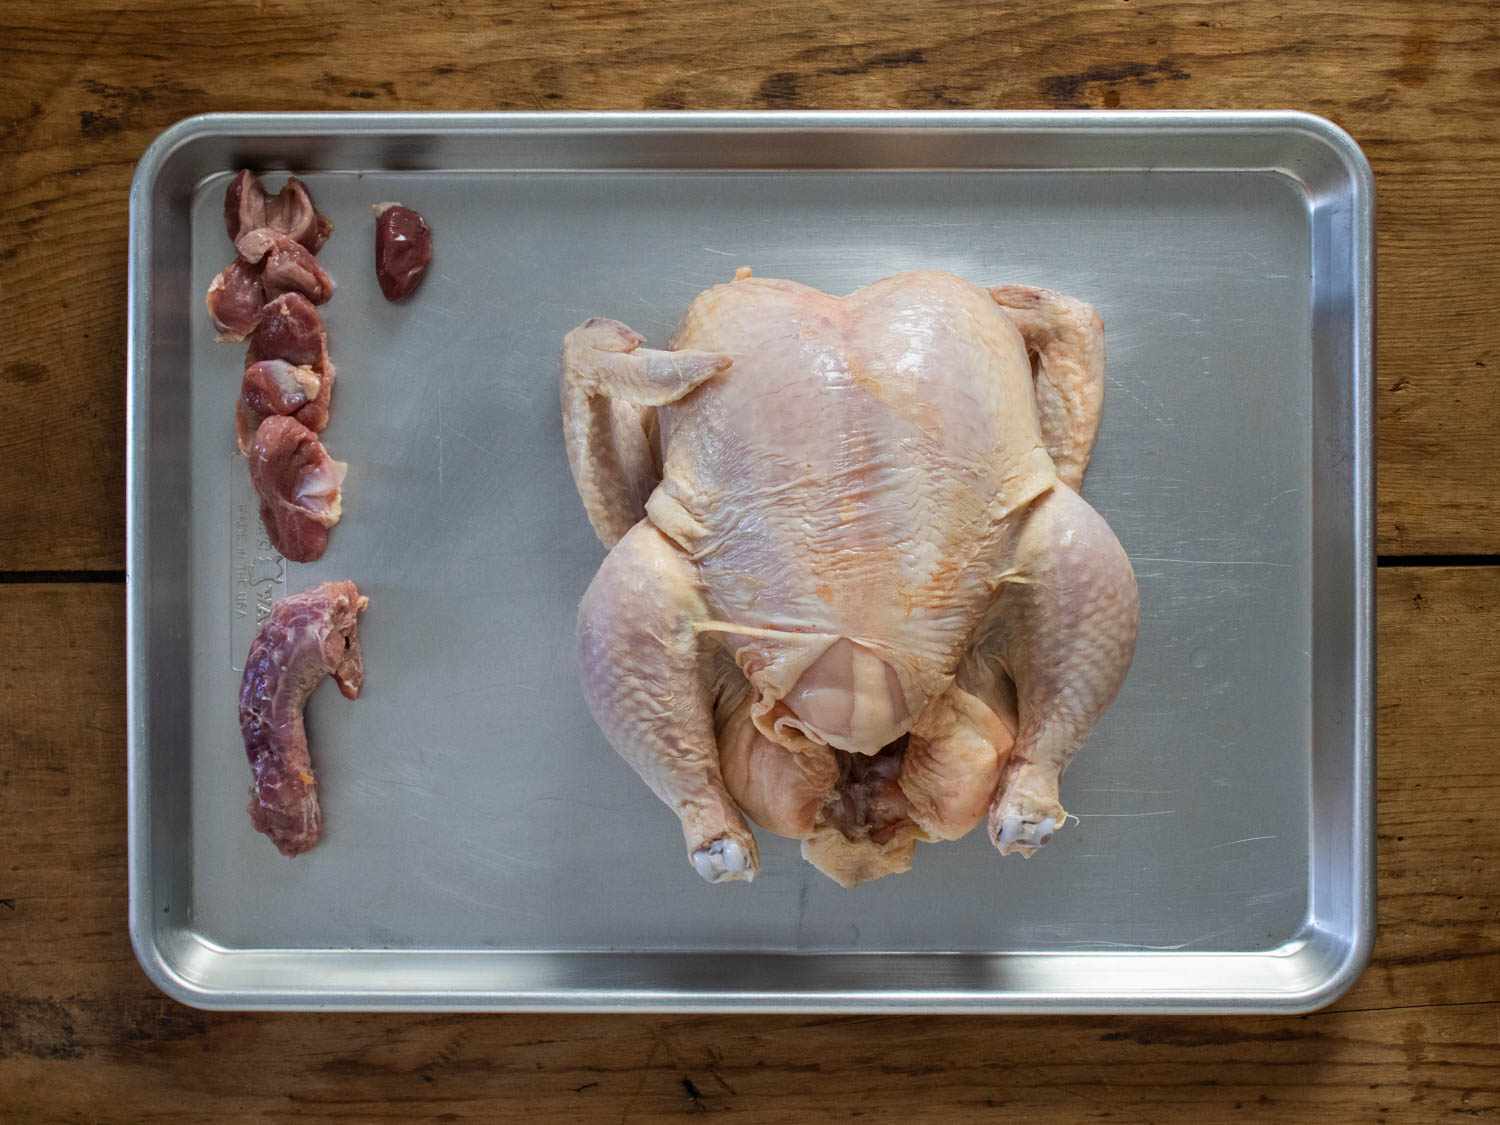 整个鸡的内脏安排旁边边的烤盘